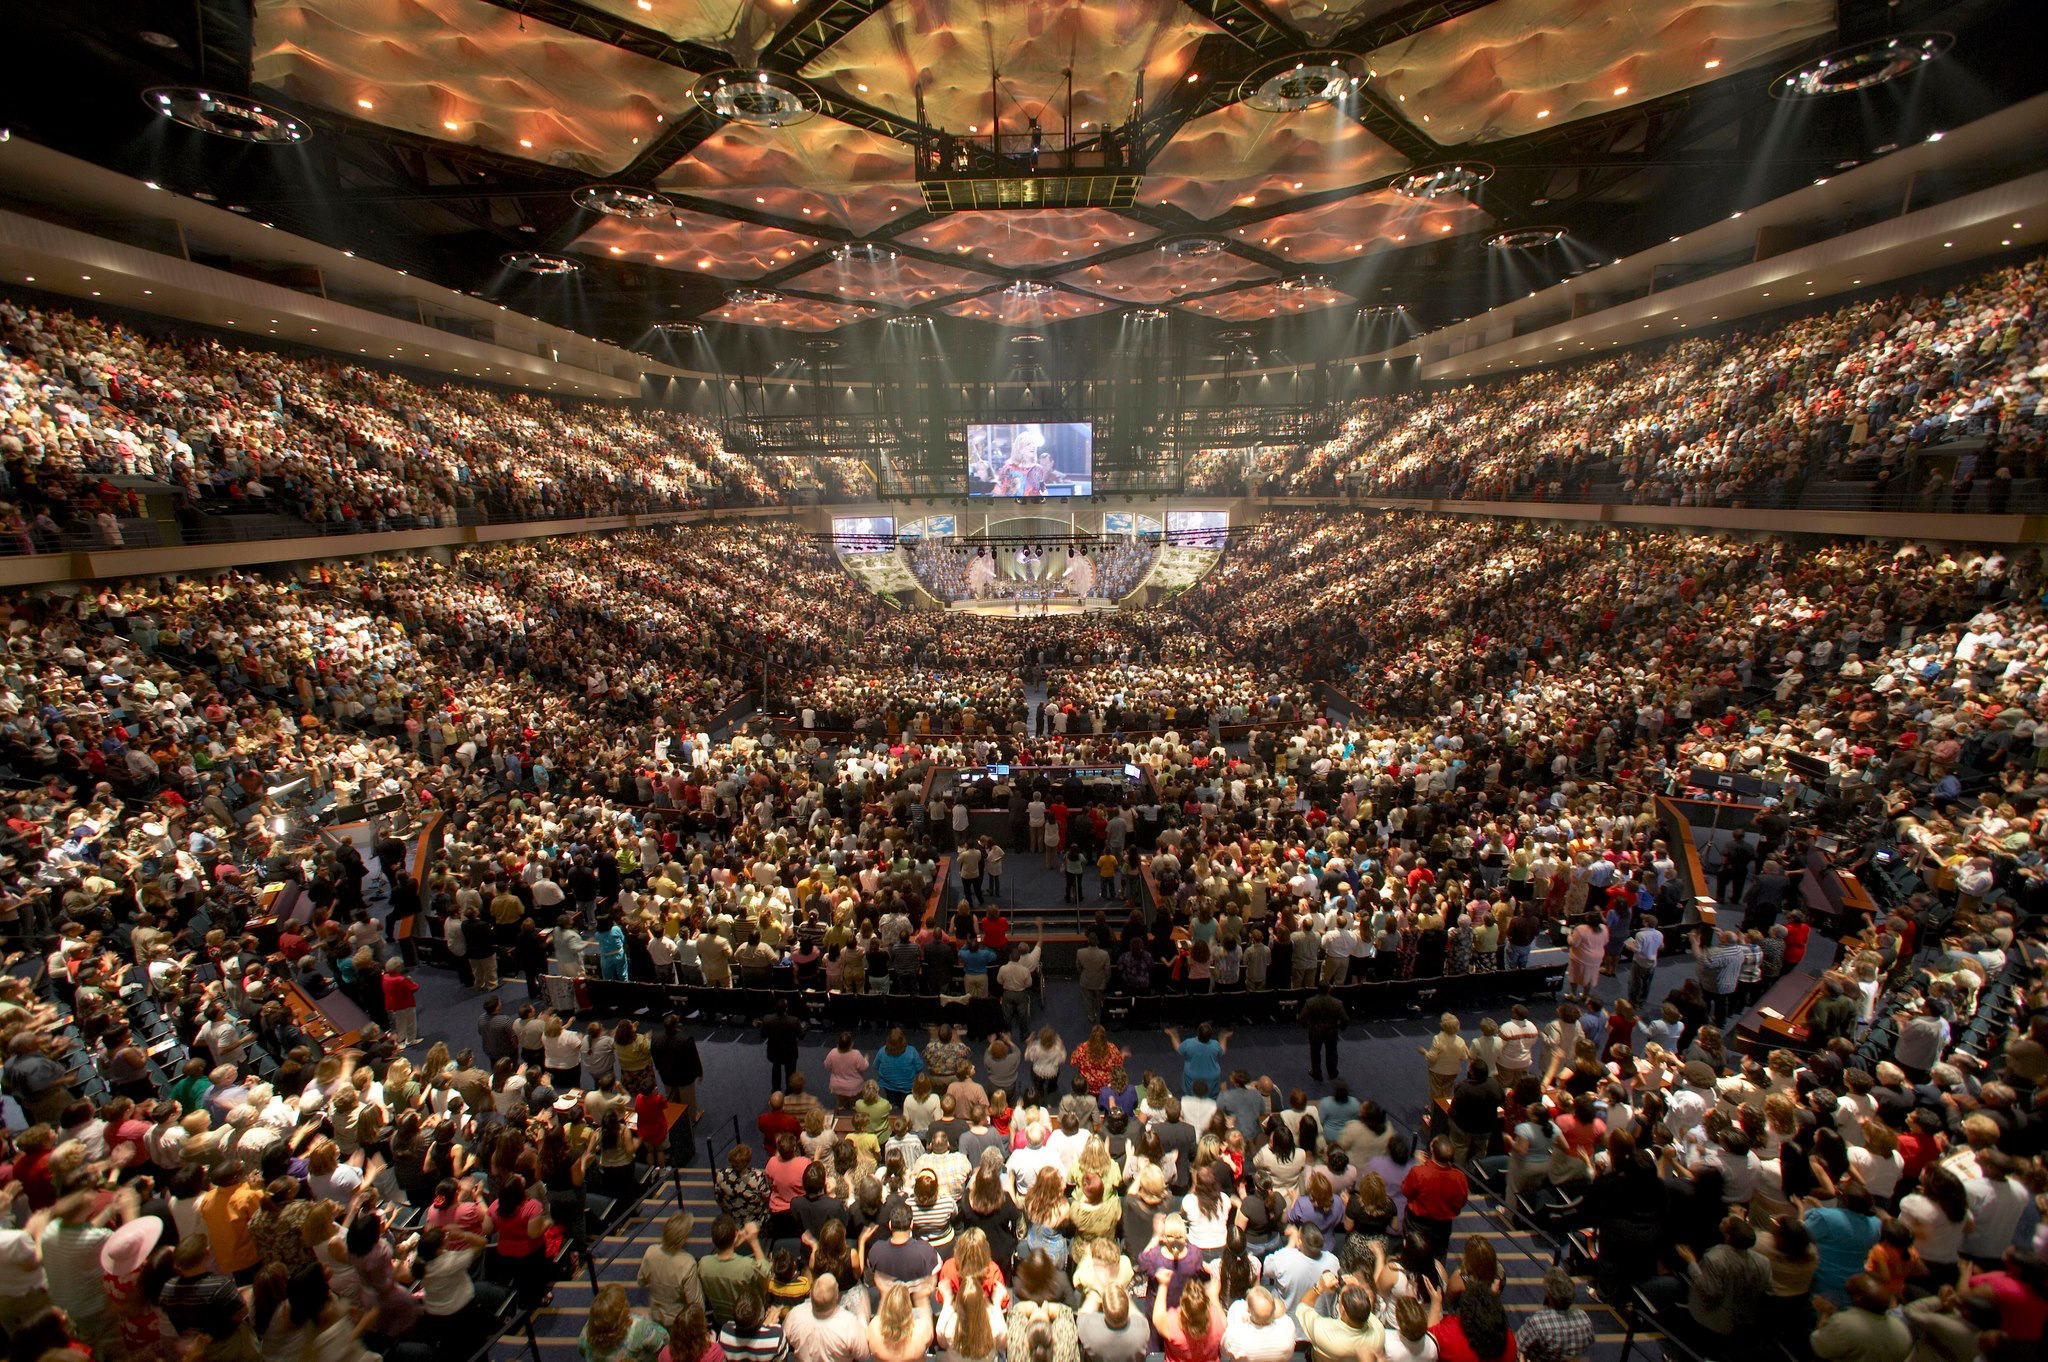 Ceremonia de la Iglesia Lakewood en Houston (USA) en un estadio deportivo con capacidad para 16.000 personas.  Foto: ToBeDaniel